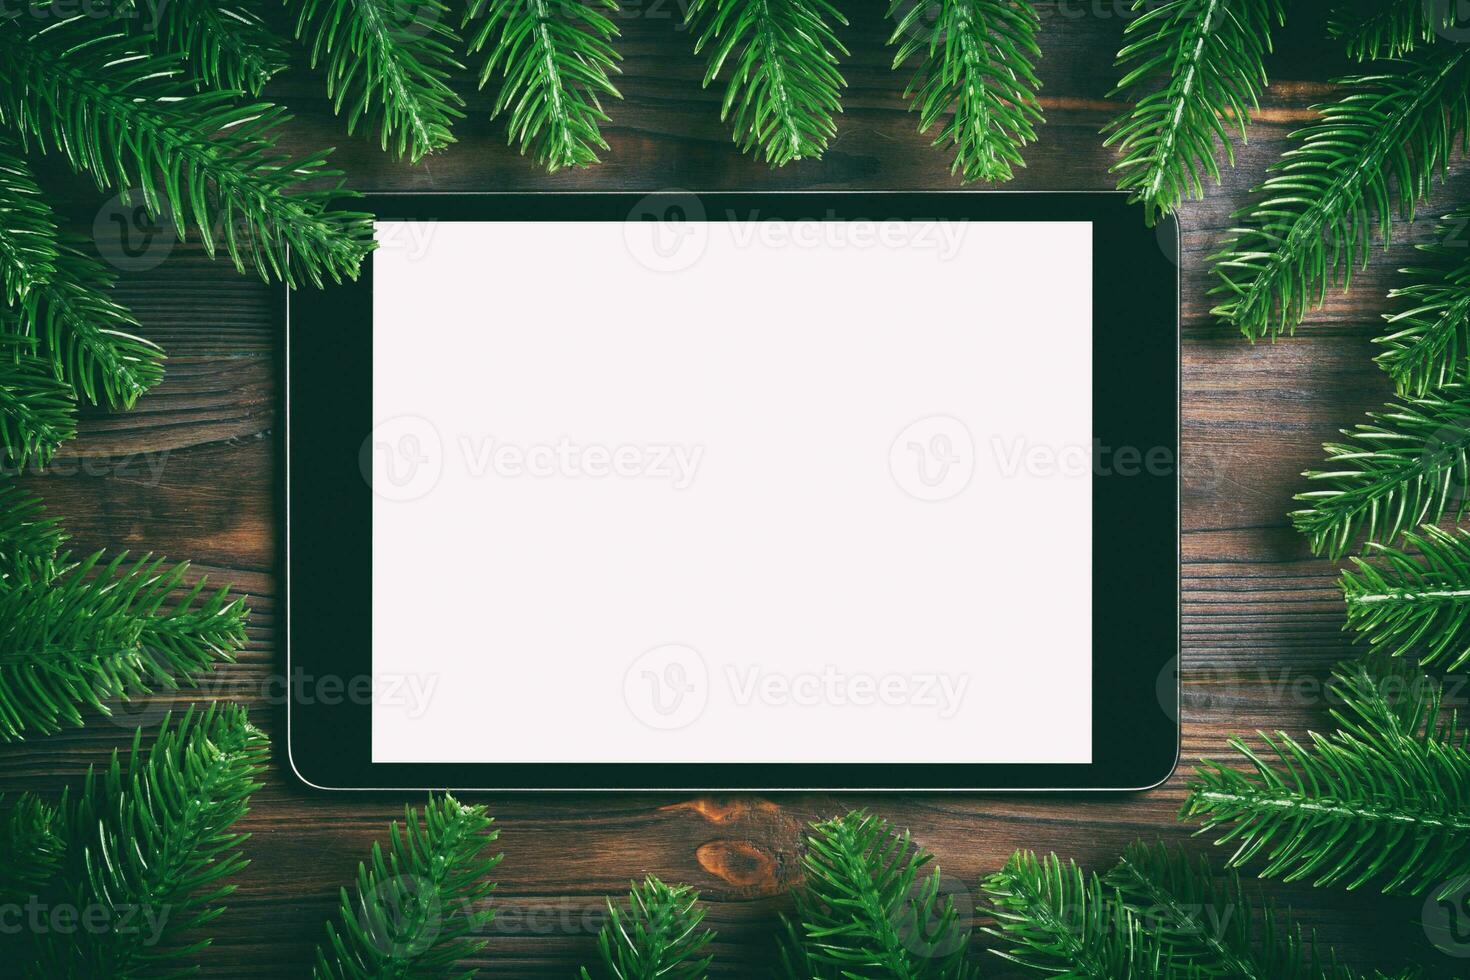 vue de dessus de tablette ornée d'un cadre en sapin sur fond de bois. concept de temps du nouvel an photo